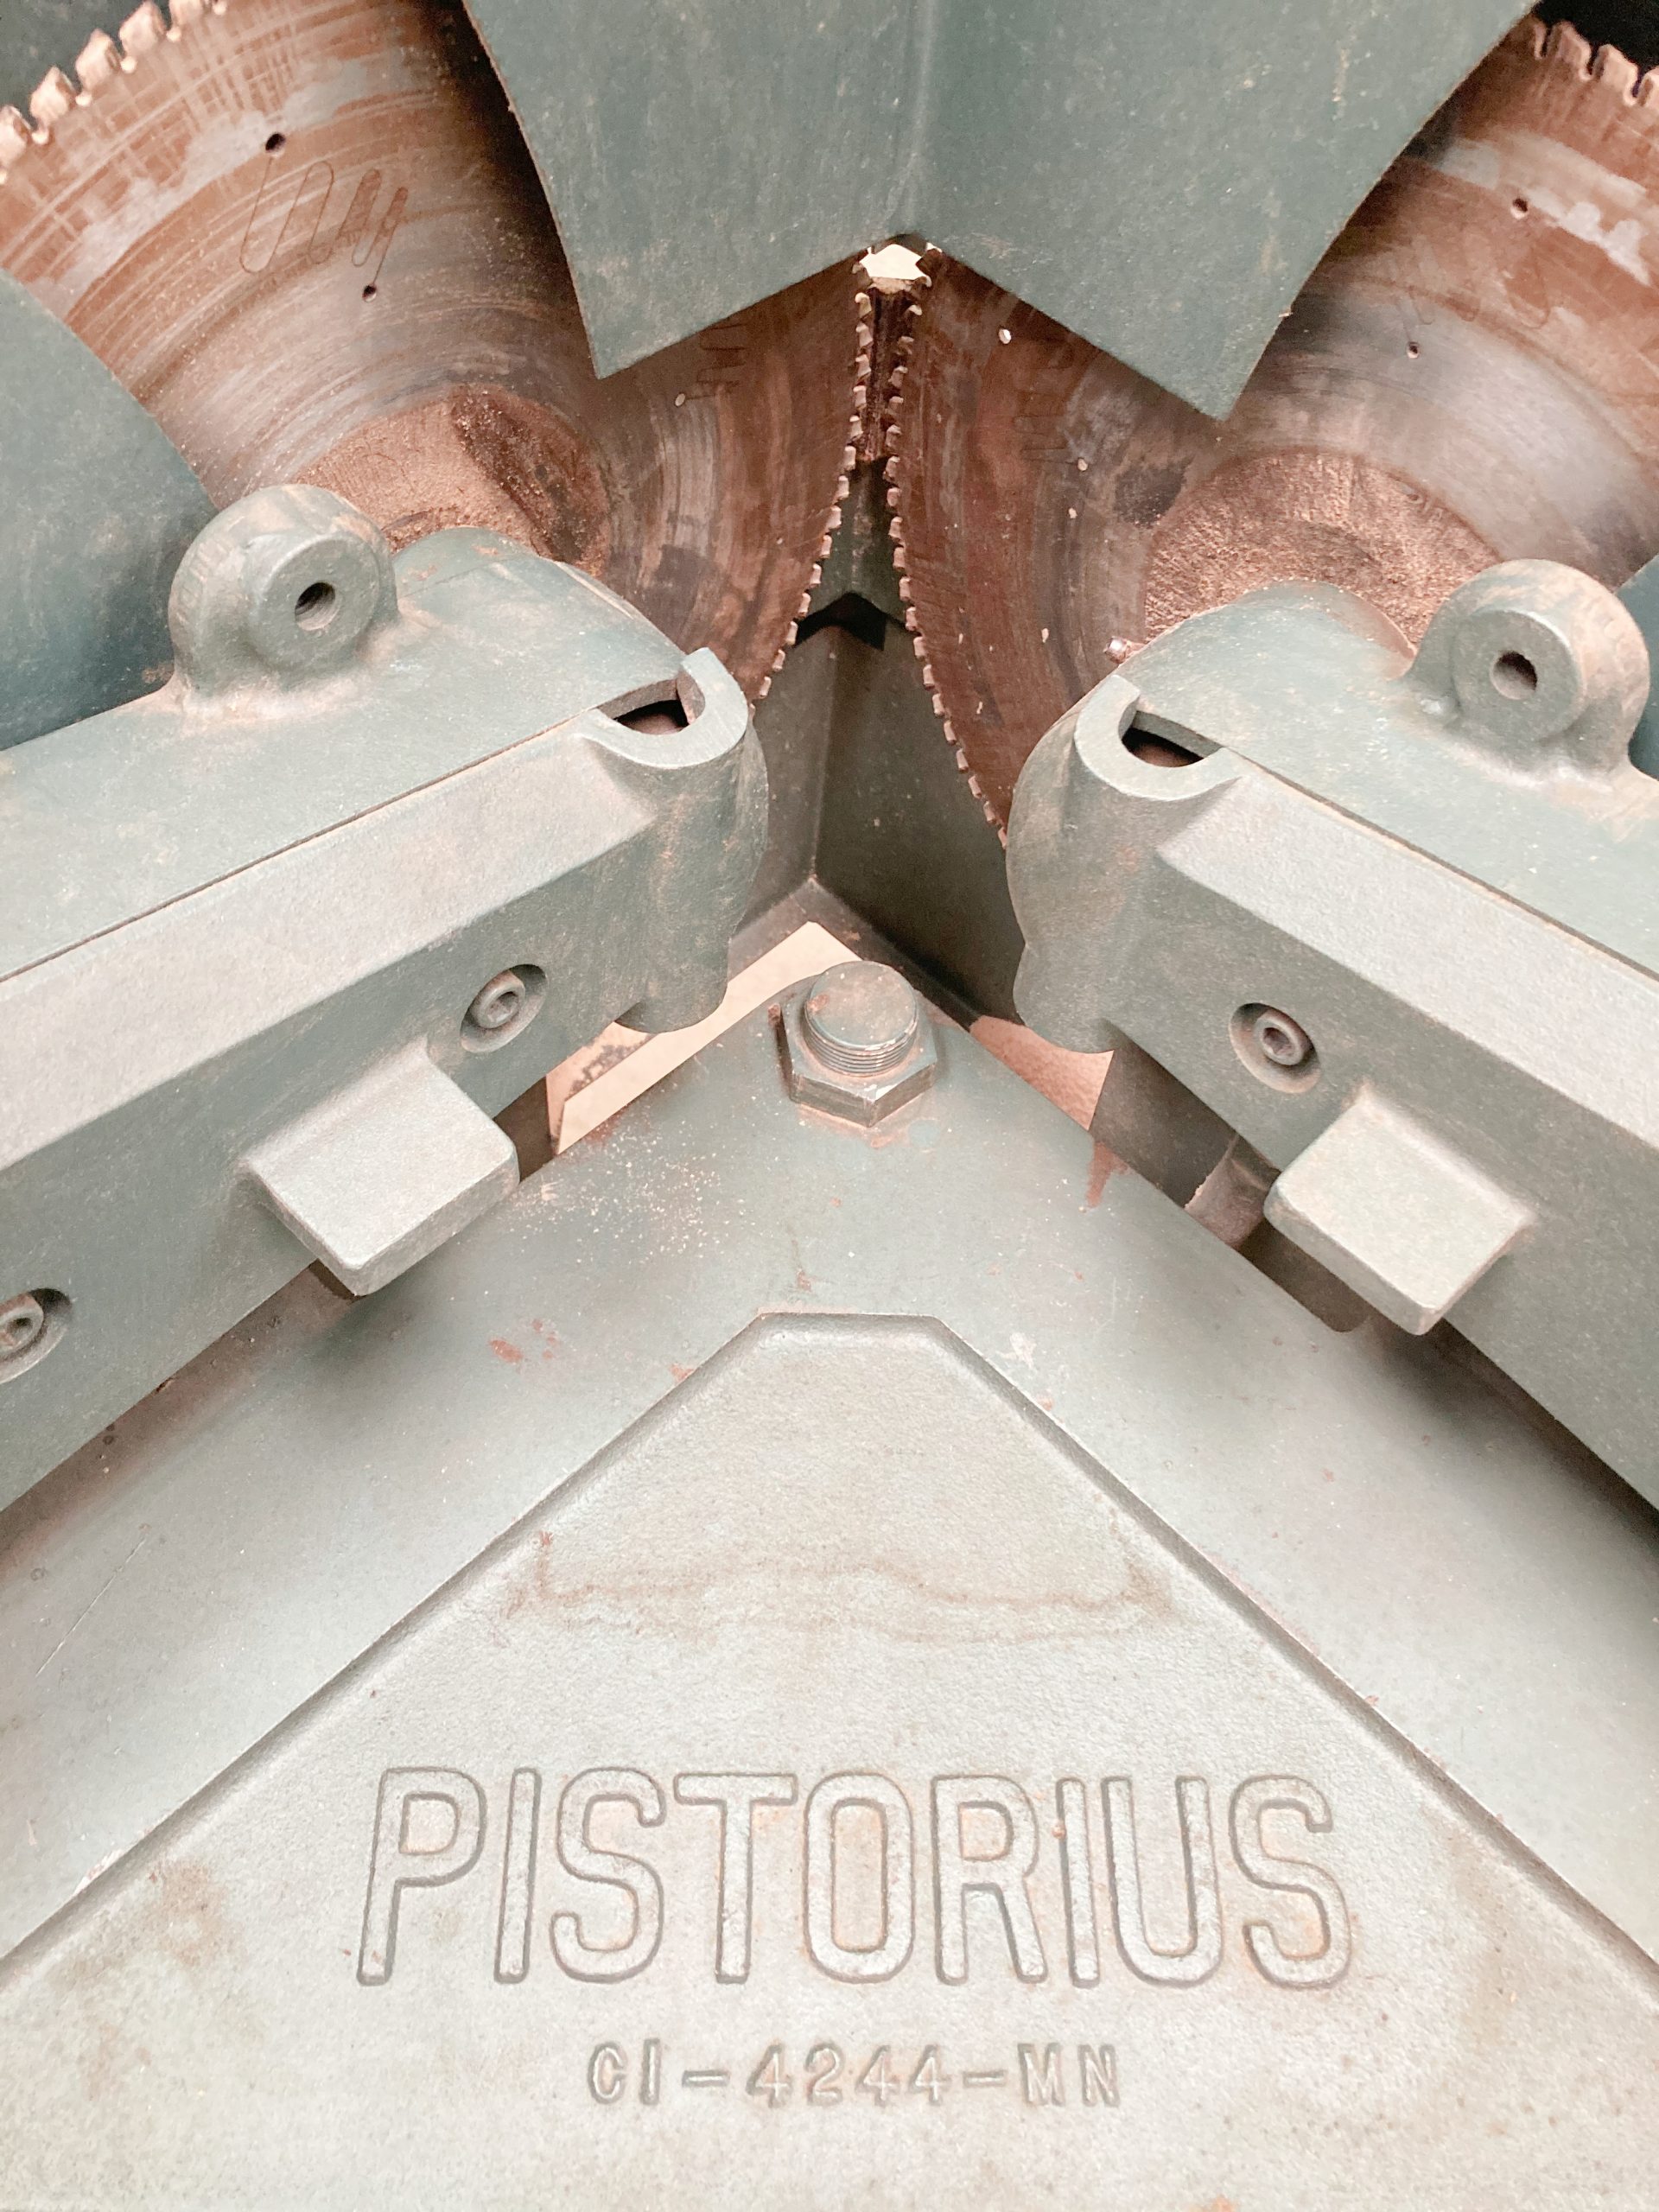 Equipment Lot: Pistorius MN-300 Saw & Pistorius MN-200 Saws (Used) Item # UE-063021A (Texas)